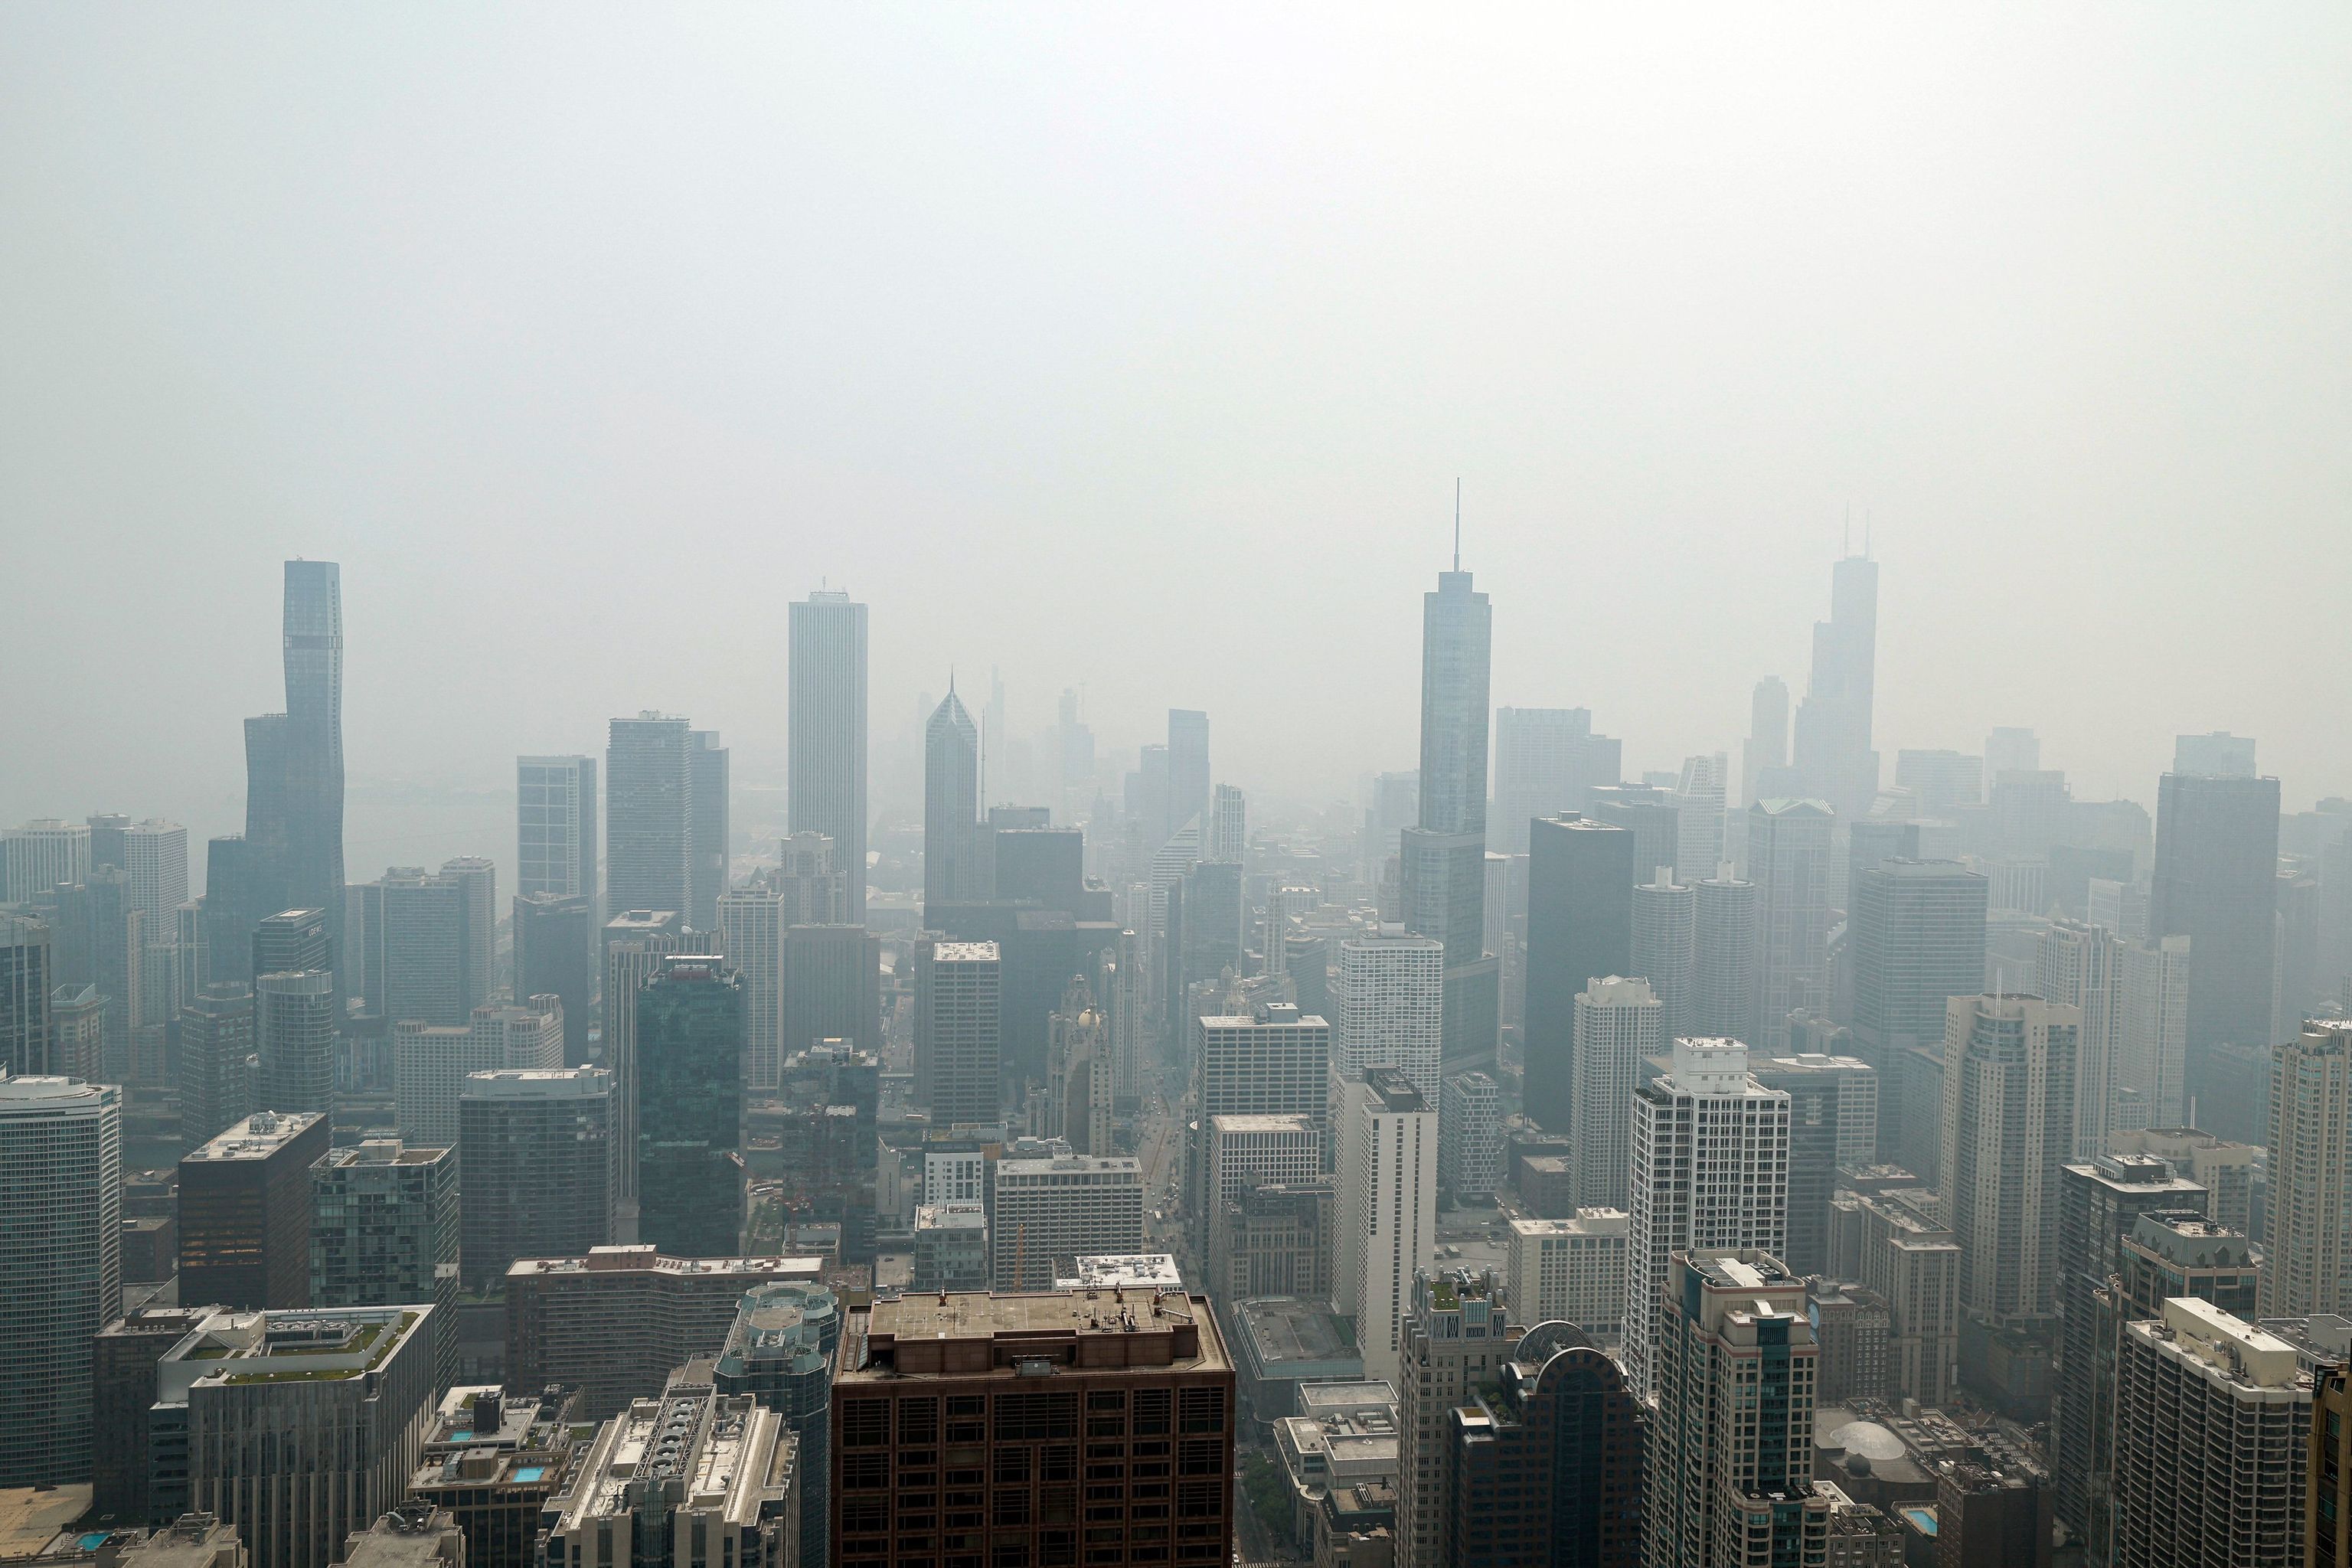 El horizonte de Chicago se ve desde la cubierta de observación 360 Chicago del edificio John Hancock con el humo pesado de los incendios forestales canadienses que cubren la ciudad, el 27 de junio de 2023, en Chicago, Illinois. El alcalde de Chicago, Brandon Johnson, dijo en un comunicado: "La ciudad de Chicago está vigilando cuidadosamente y tomando precauciones, ya que la Agencia de Protección Ambiental de EE.UU. (EPA) ha clasificado nuestro Índice de Calidad del Aire como "insalubre" debido al humo de los incendios forestales canadienses presentes en la región de Chicago. Recomendamos a los niños, adolescentes, ancianos, personas con enfermedades cardíacas o pulmonares y embarazadas que eviten actividades extenuantes y limiten su tiempo al aire libre."